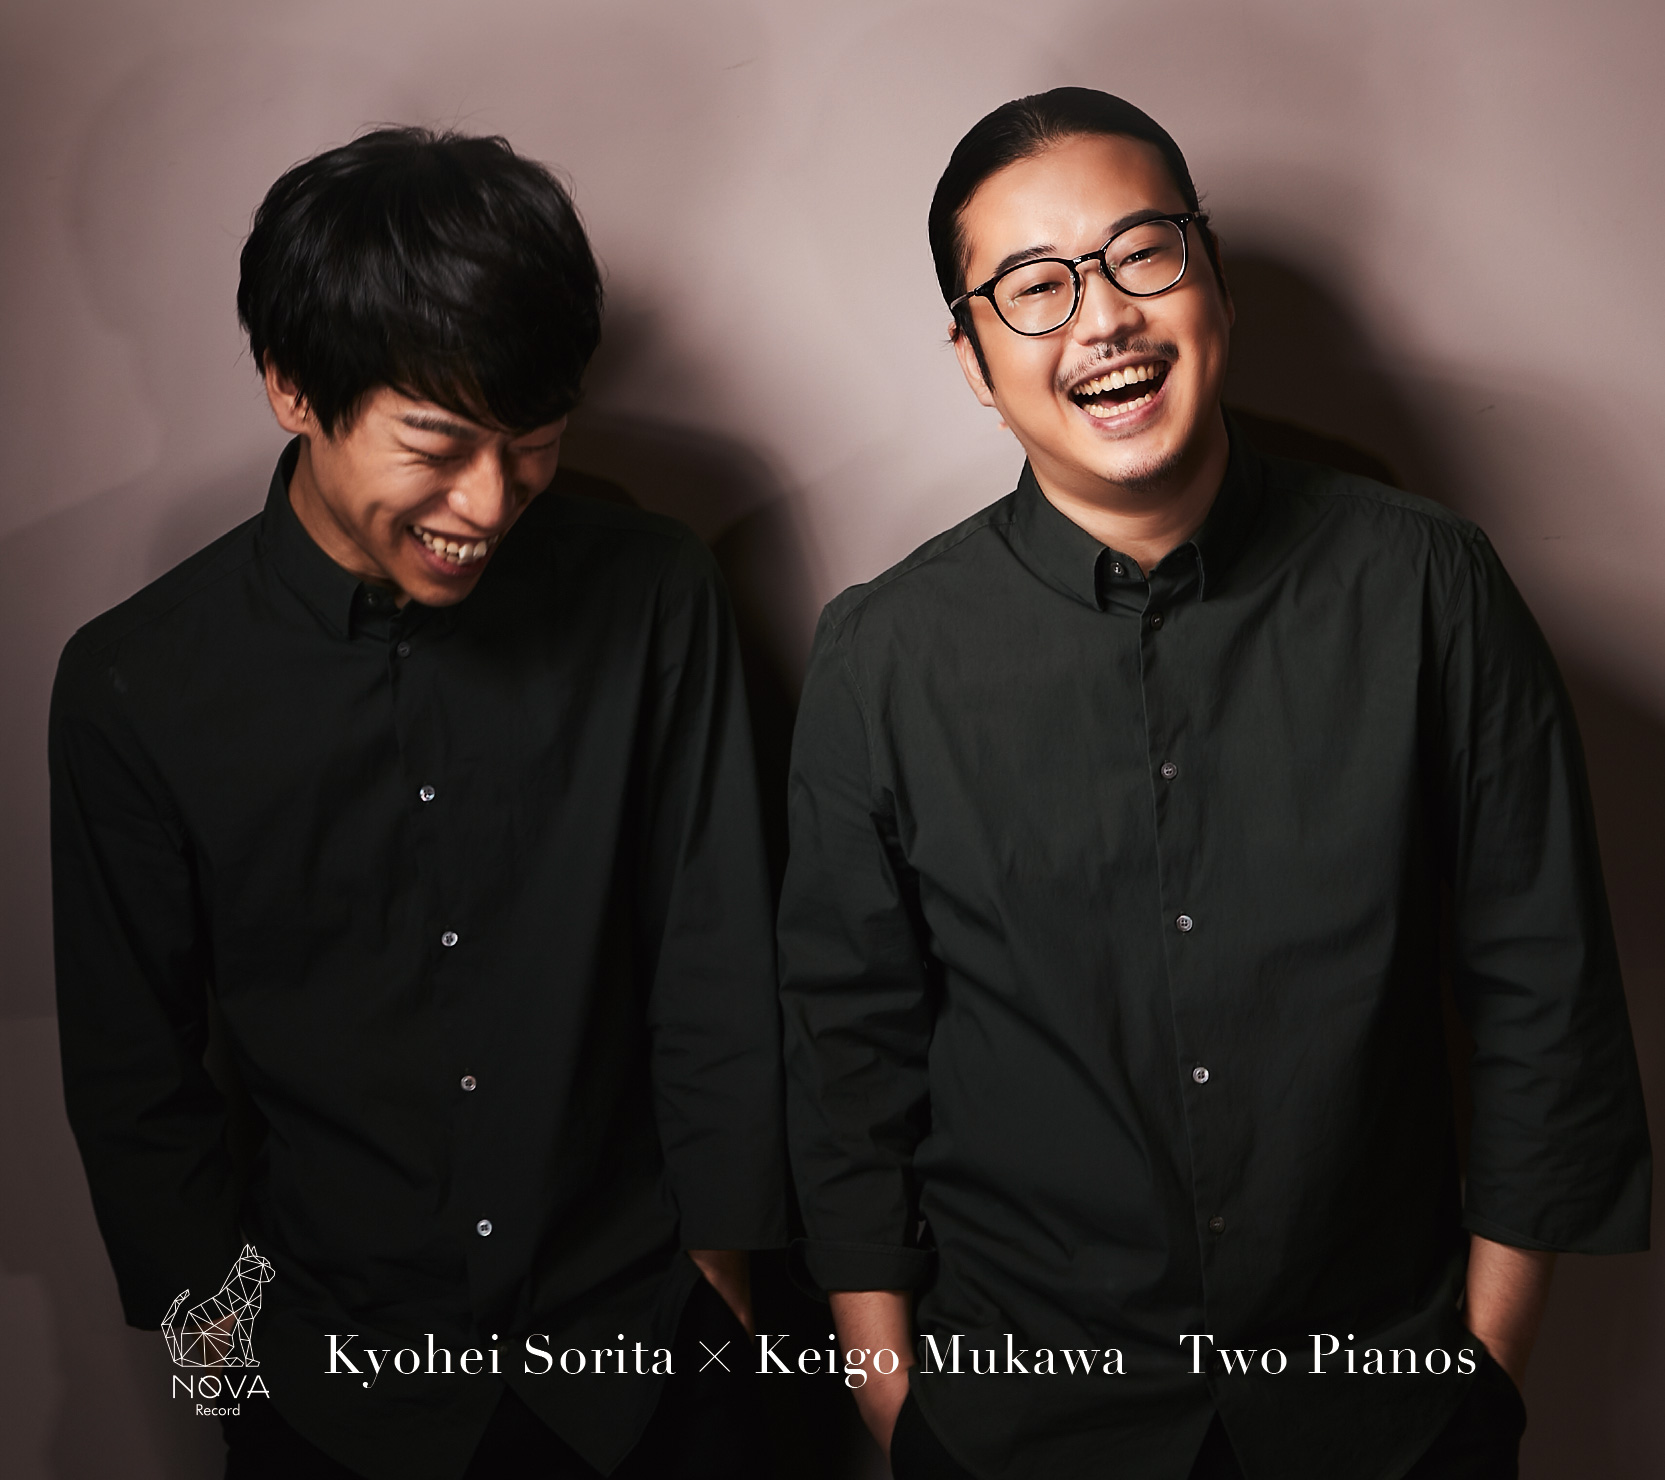 Kyohei Sorita x Keigo Mukawa Two Pianos